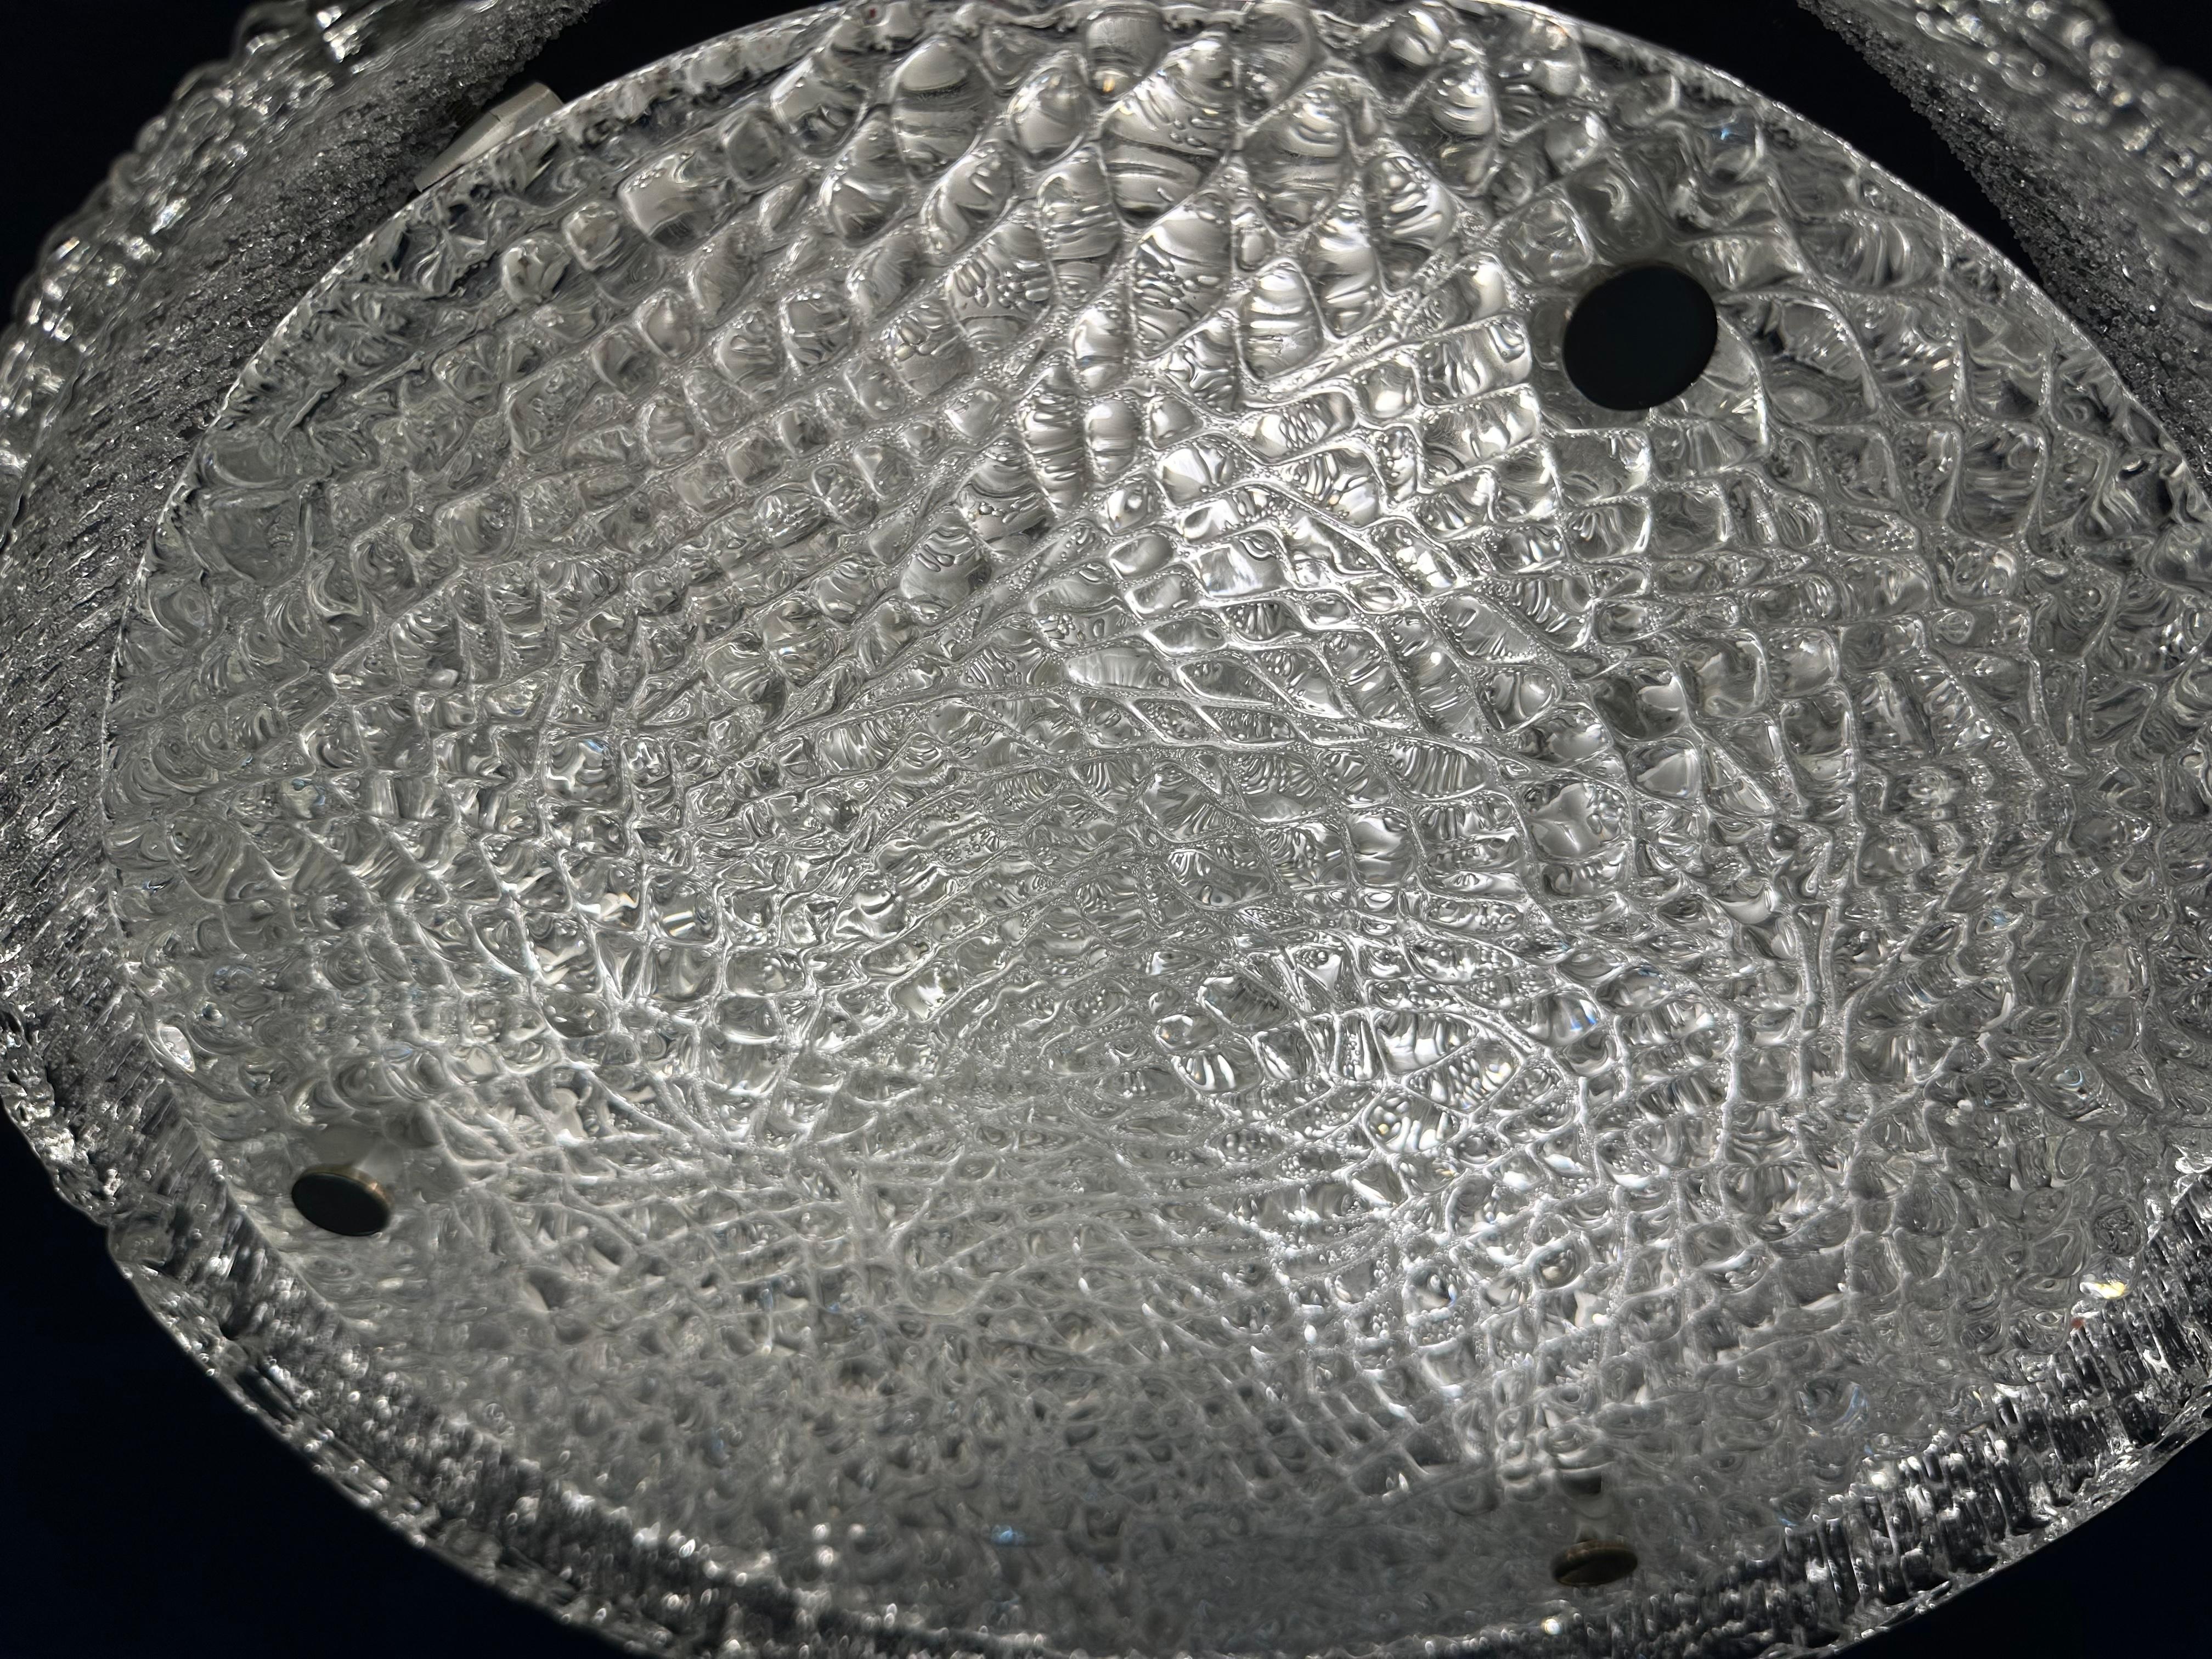 1960s German Kaiser Leuchten Textured Iced Glass Flush Mount Ceiling Light For Sale 1